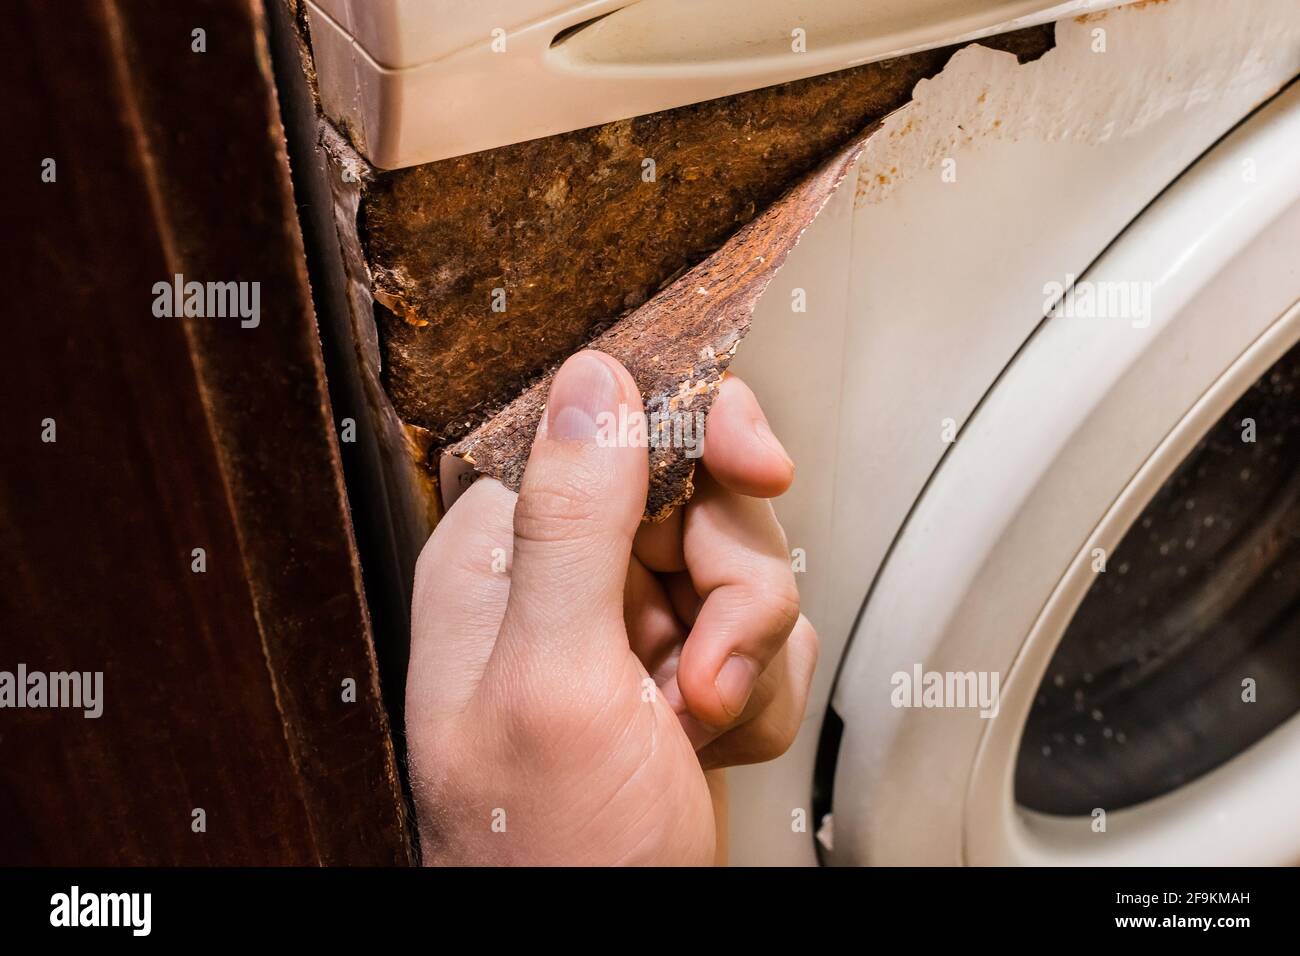 La main retient la couche rouillée d'un ancien lave-linge Photo Stock -  Alamy